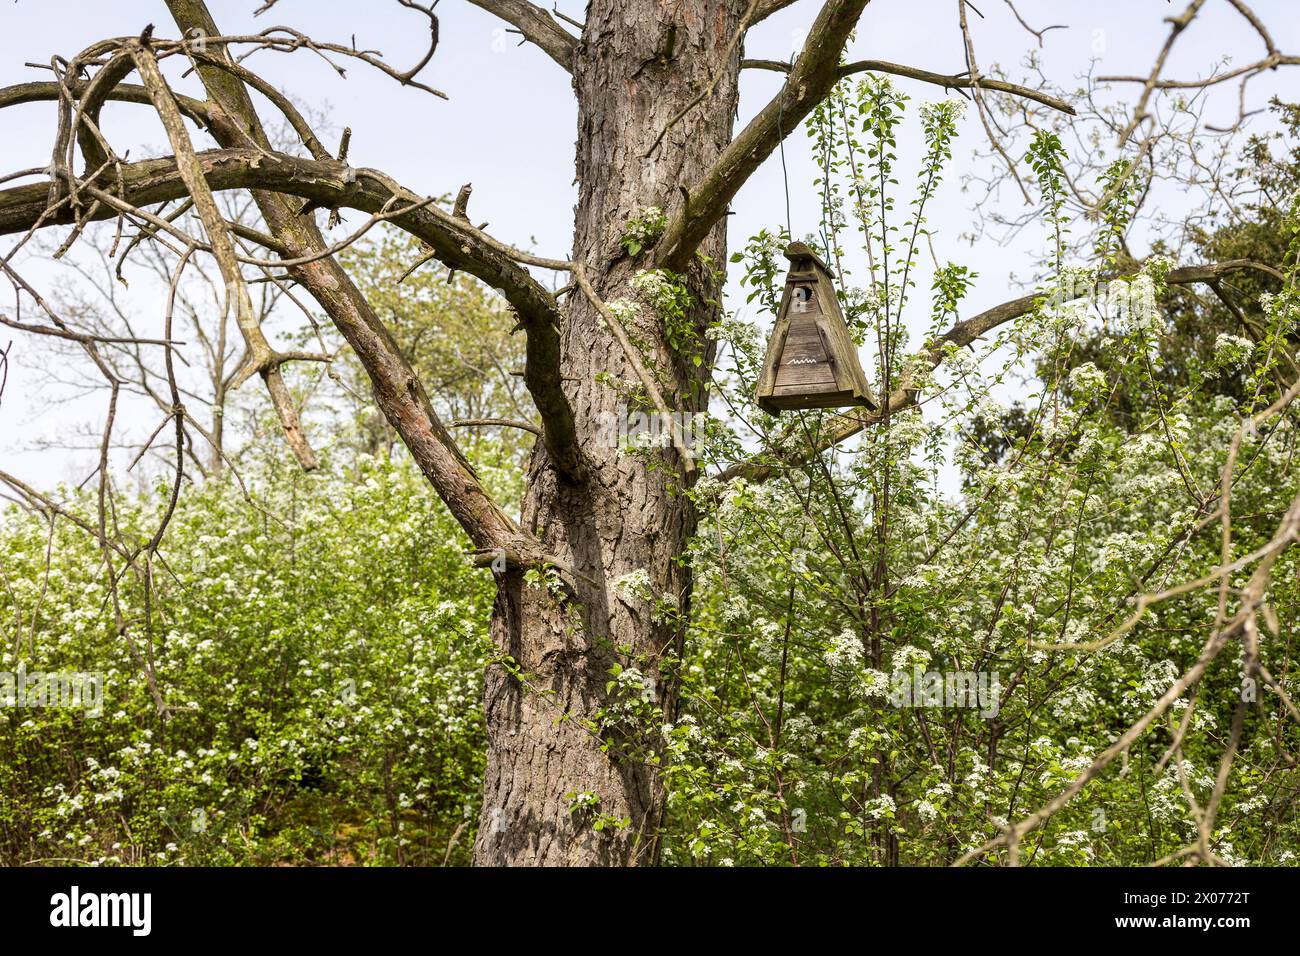 dreieckiger Nistkasten hängt in einem alten Baum, die umgebenden Büsche und Sträucher stehen in Blüte, Naturschutzgebiet Wachtelberg, Wurzen, Sachsen, Stock Photo